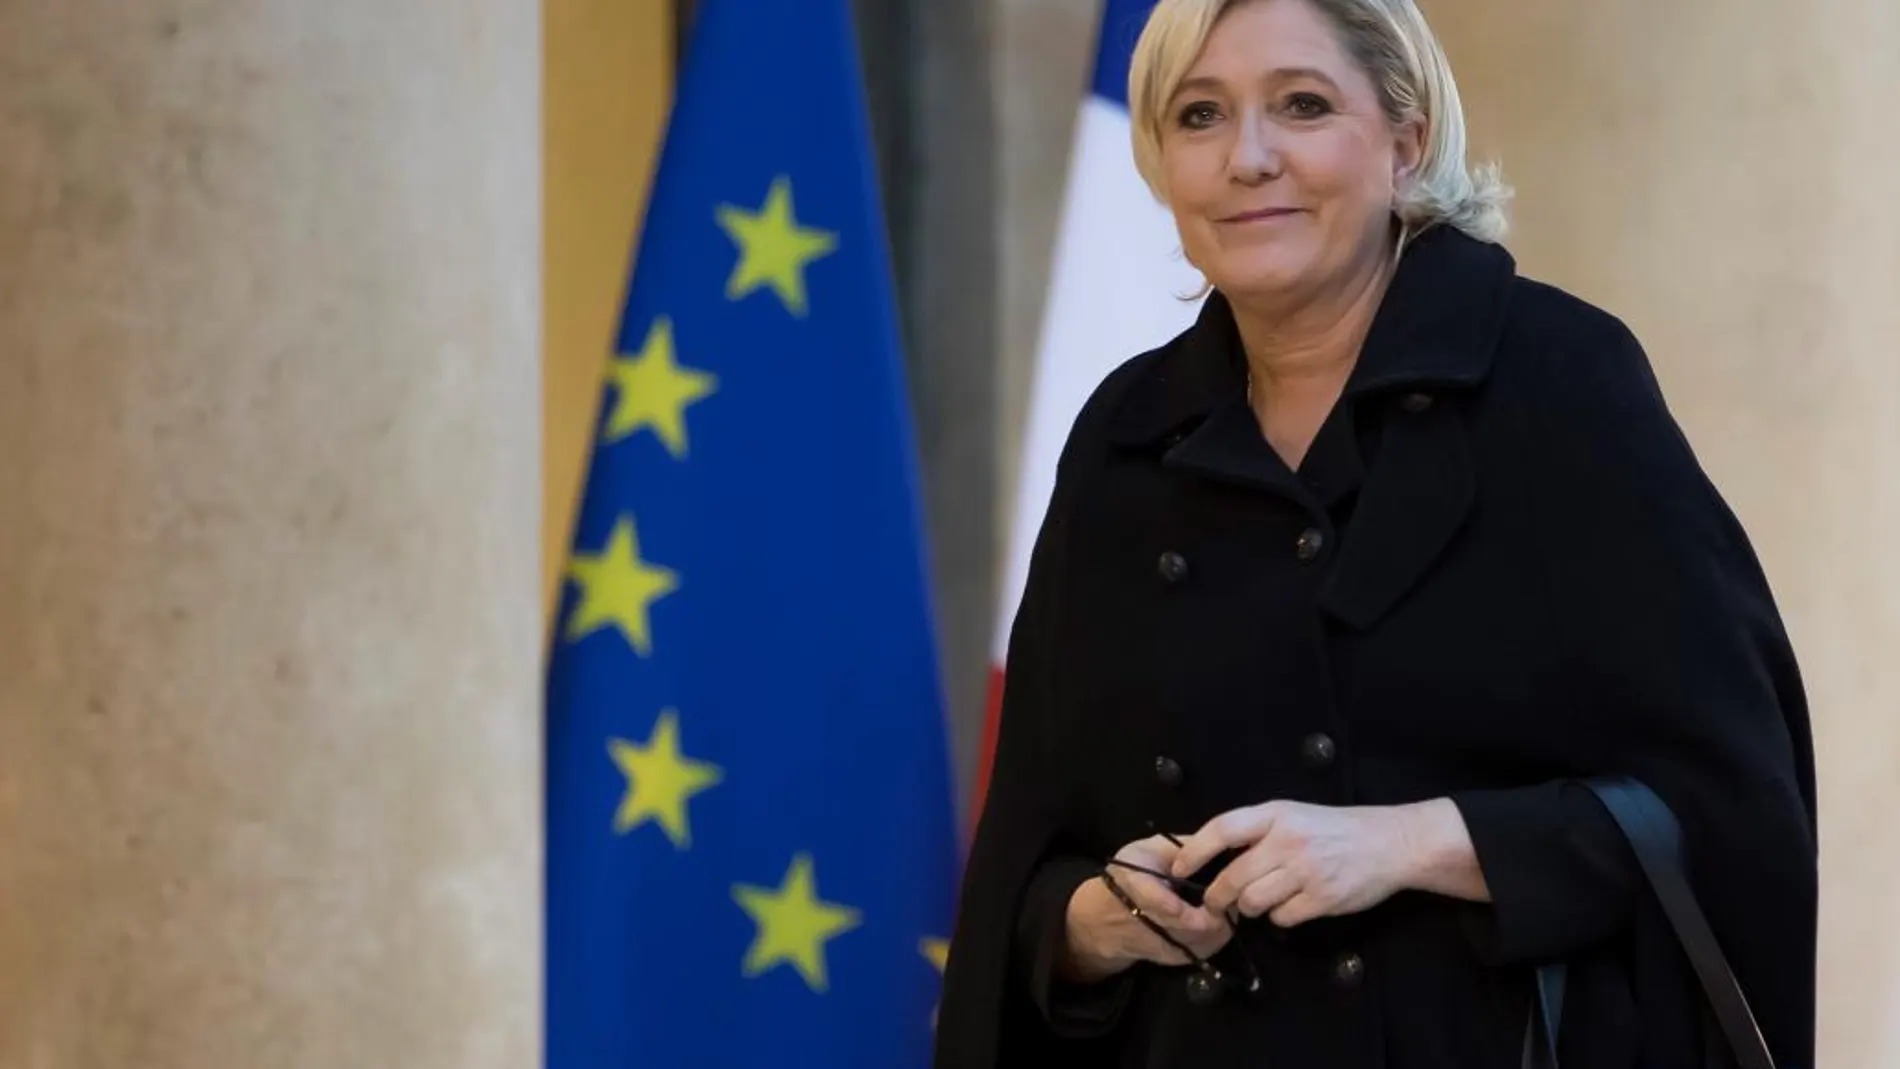 La presidenta del partido Frente Nacional, Marine Le Pen, a su llegada a una reunión con el presidente galo, Emmanuel Macron, ayer, en el Palacio del Elíseo en París